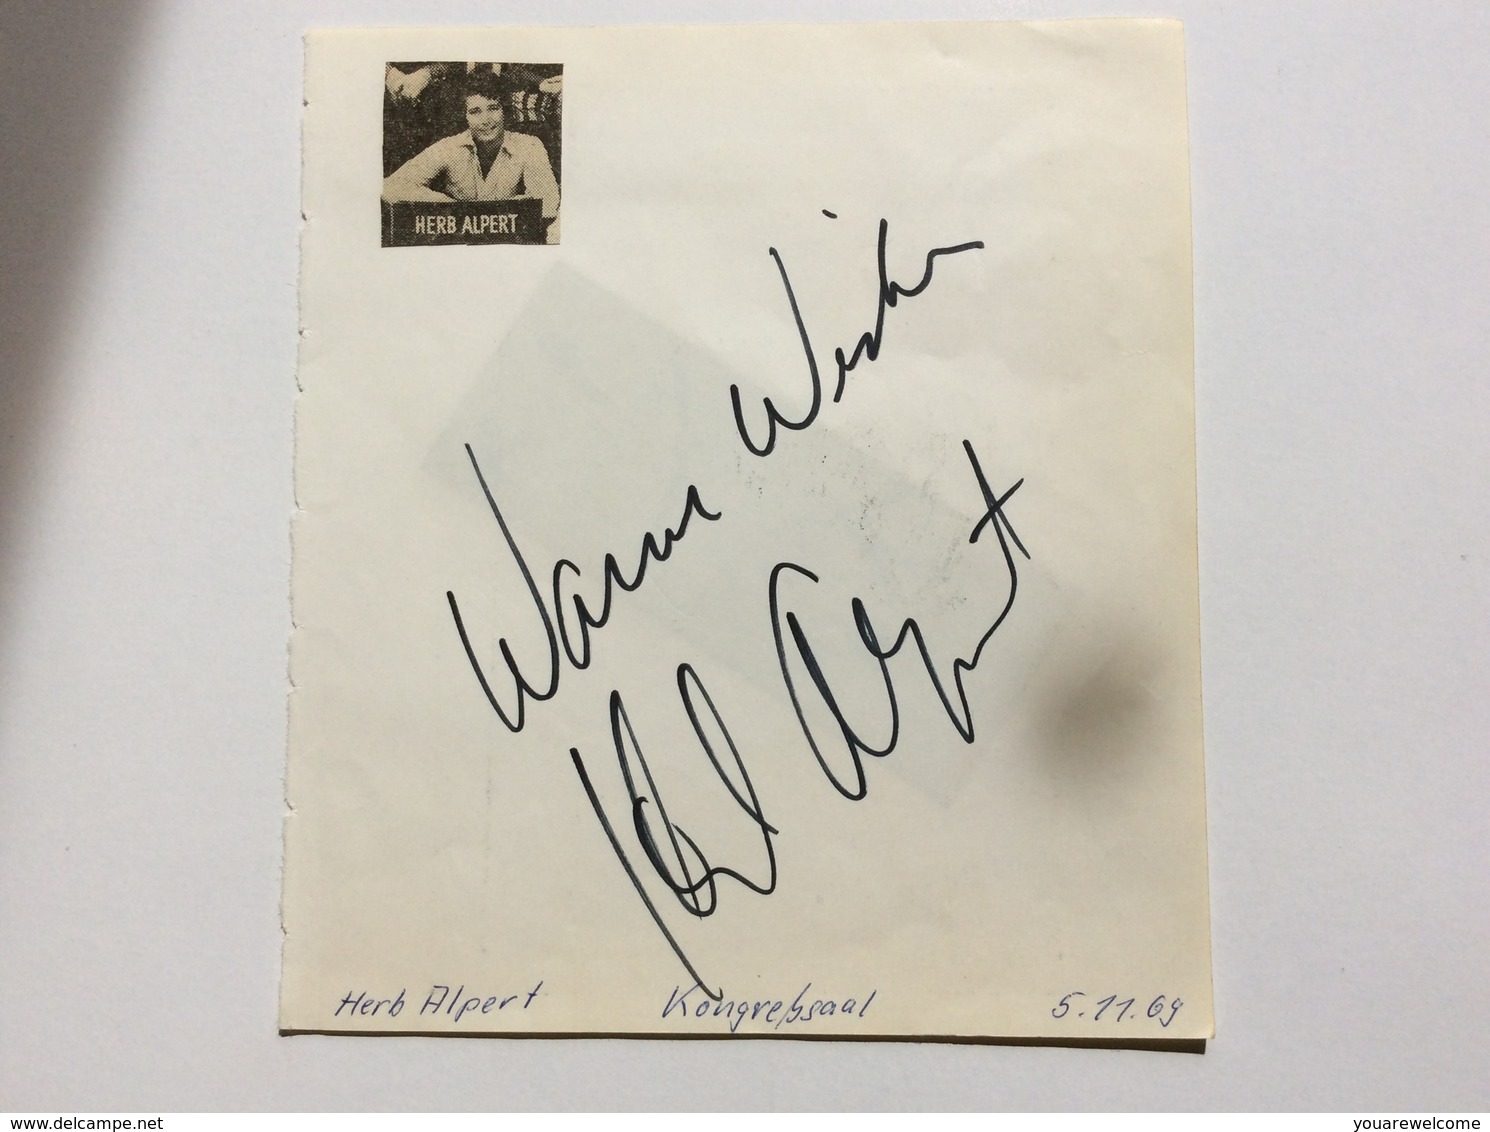 HERB ALBERT & THE TIHUANA BRASS Band Autograph München Concert Nov 1969 (music Memorabilia Autographe Musique - Autographs